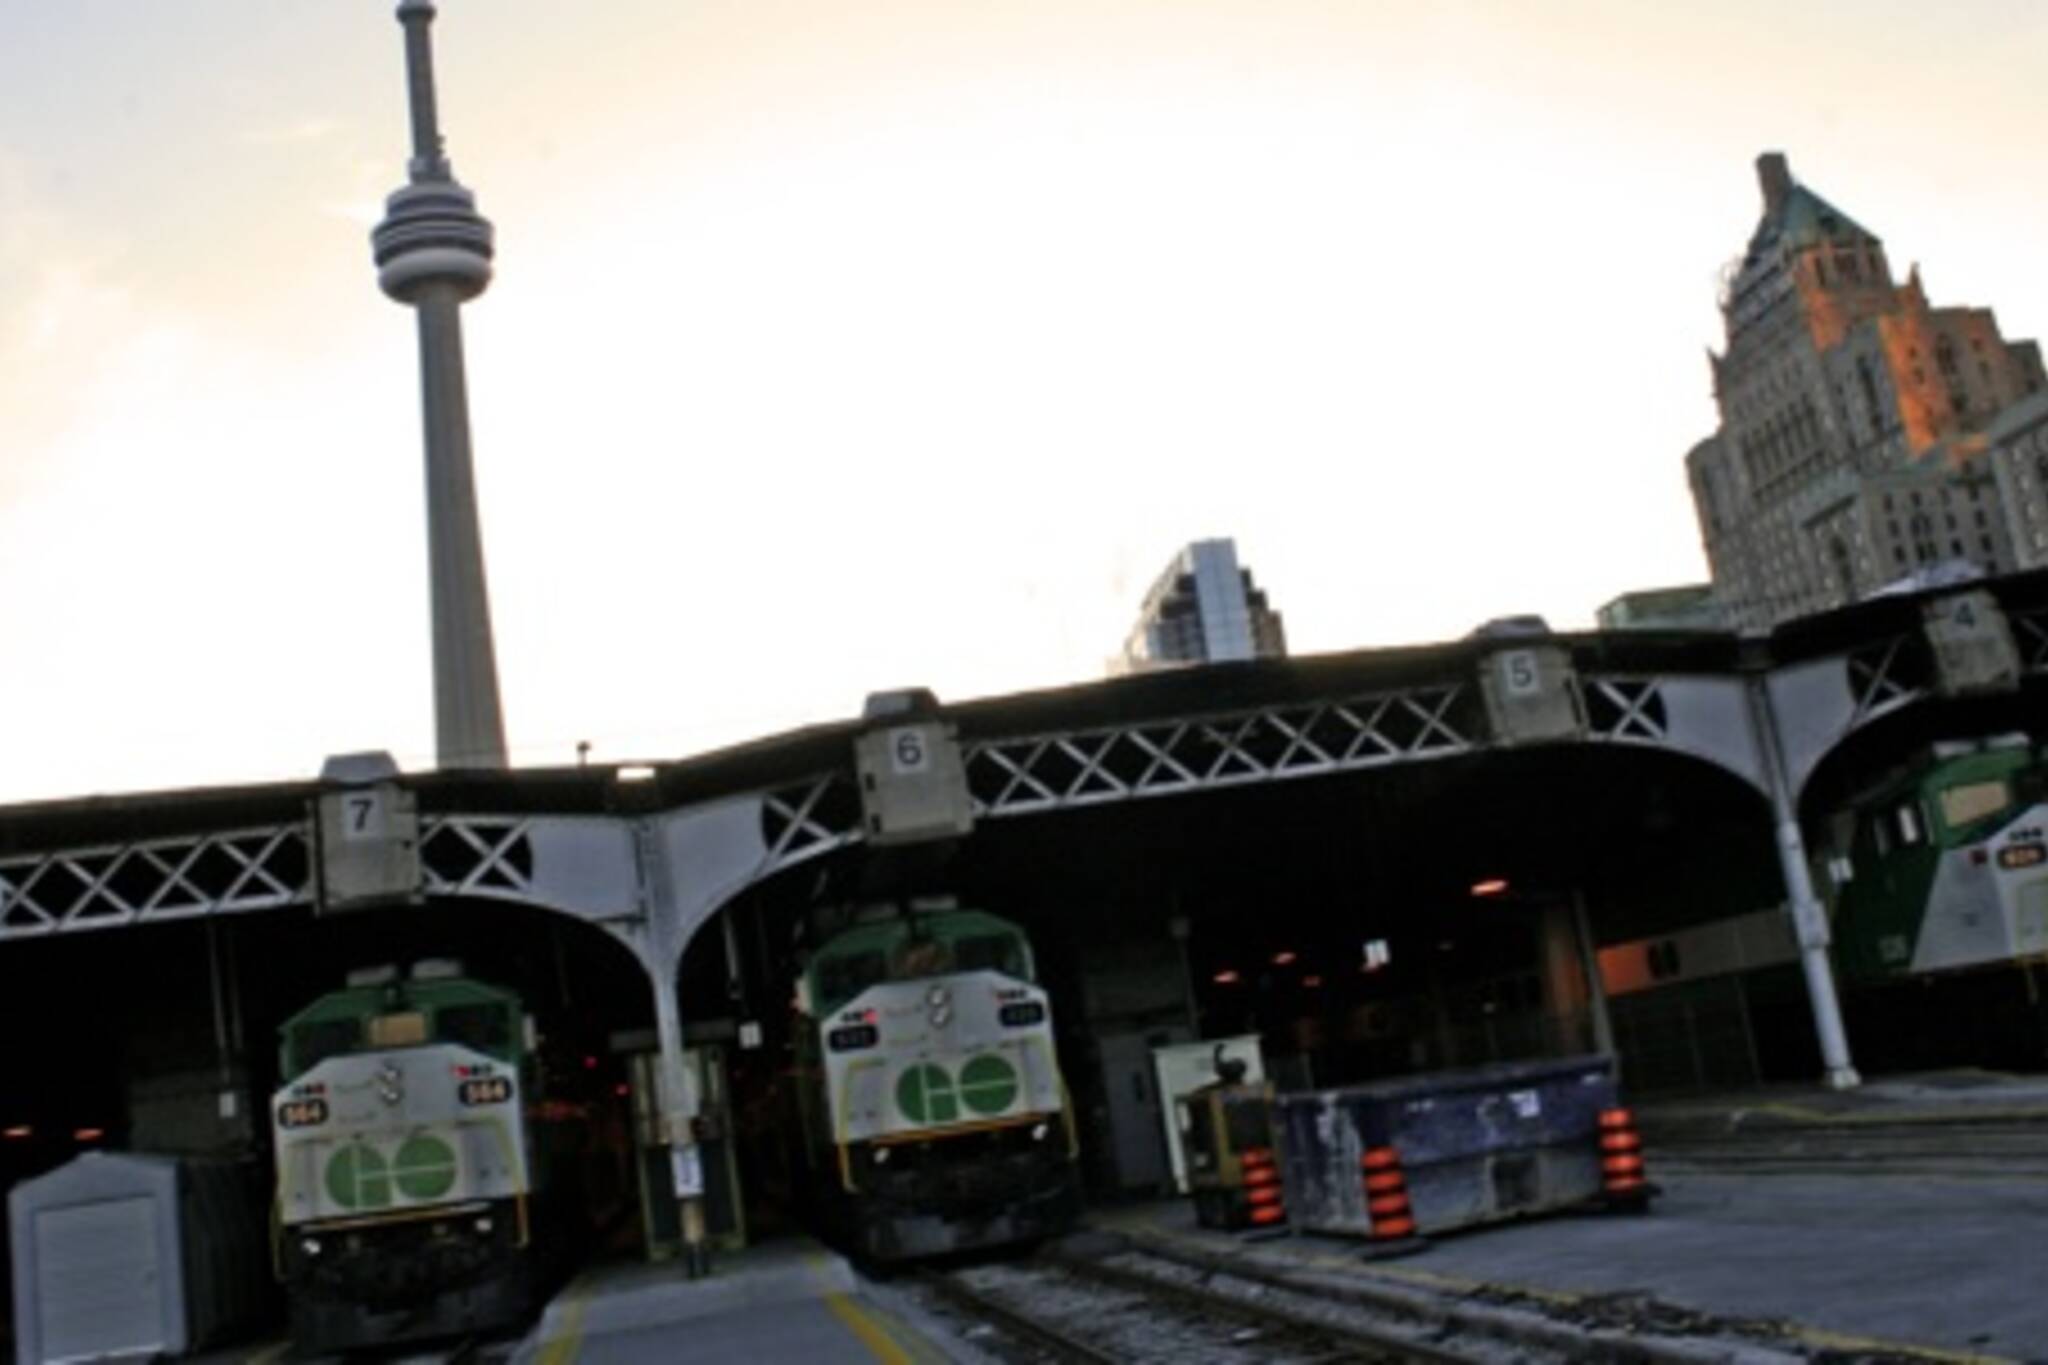 GO Train Delays Toronto